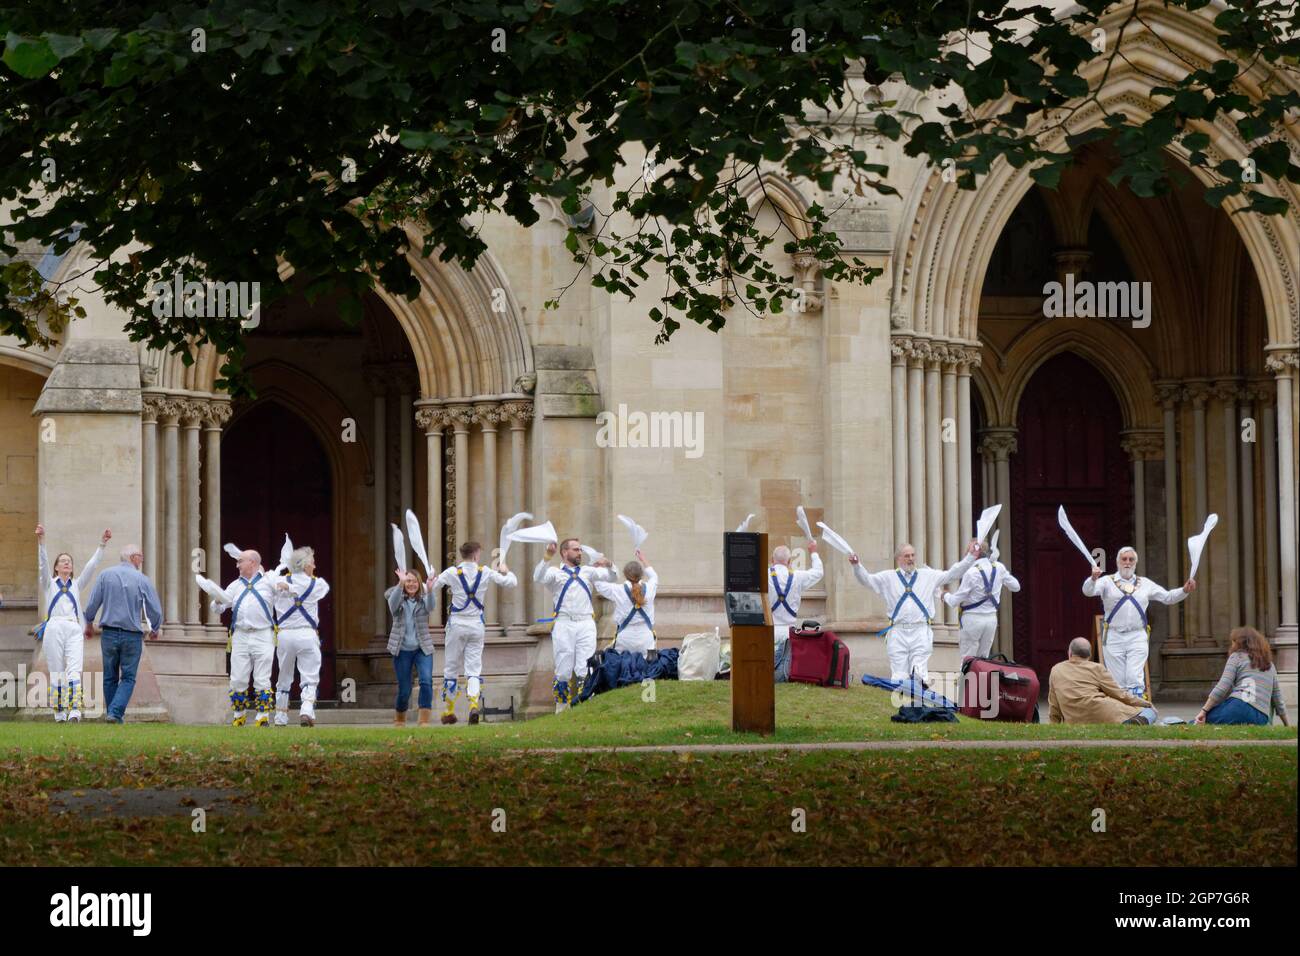 St Albans, Hertfordshire, Inghilterra, settembre 21 2021: La gente che guarda i ballerini di Morris eseguire una danza popolare tradizionale di fronte alla Cattedrale. Foto Stock